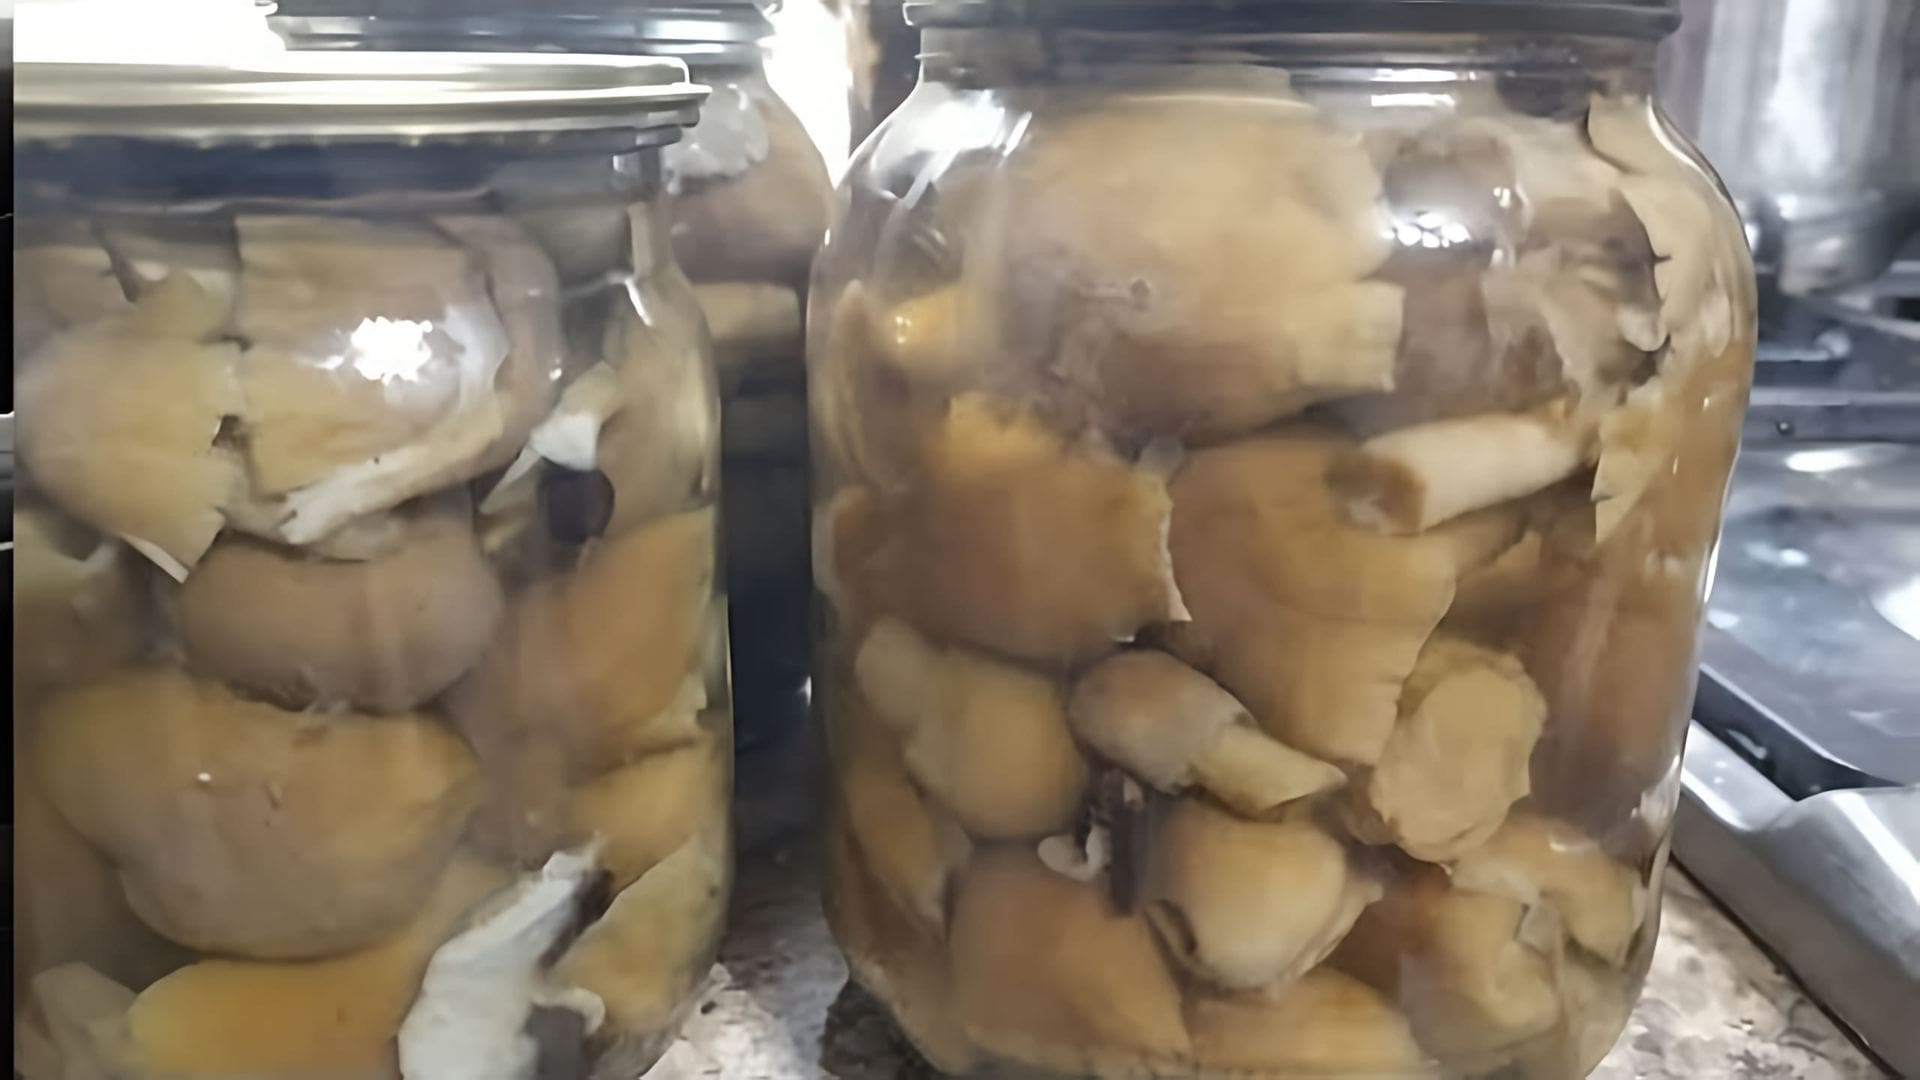 Маринованные грибы "Колпак кольчатый" - это вкусное и полезное блюдо, которое можно приготовить в домашних условиях